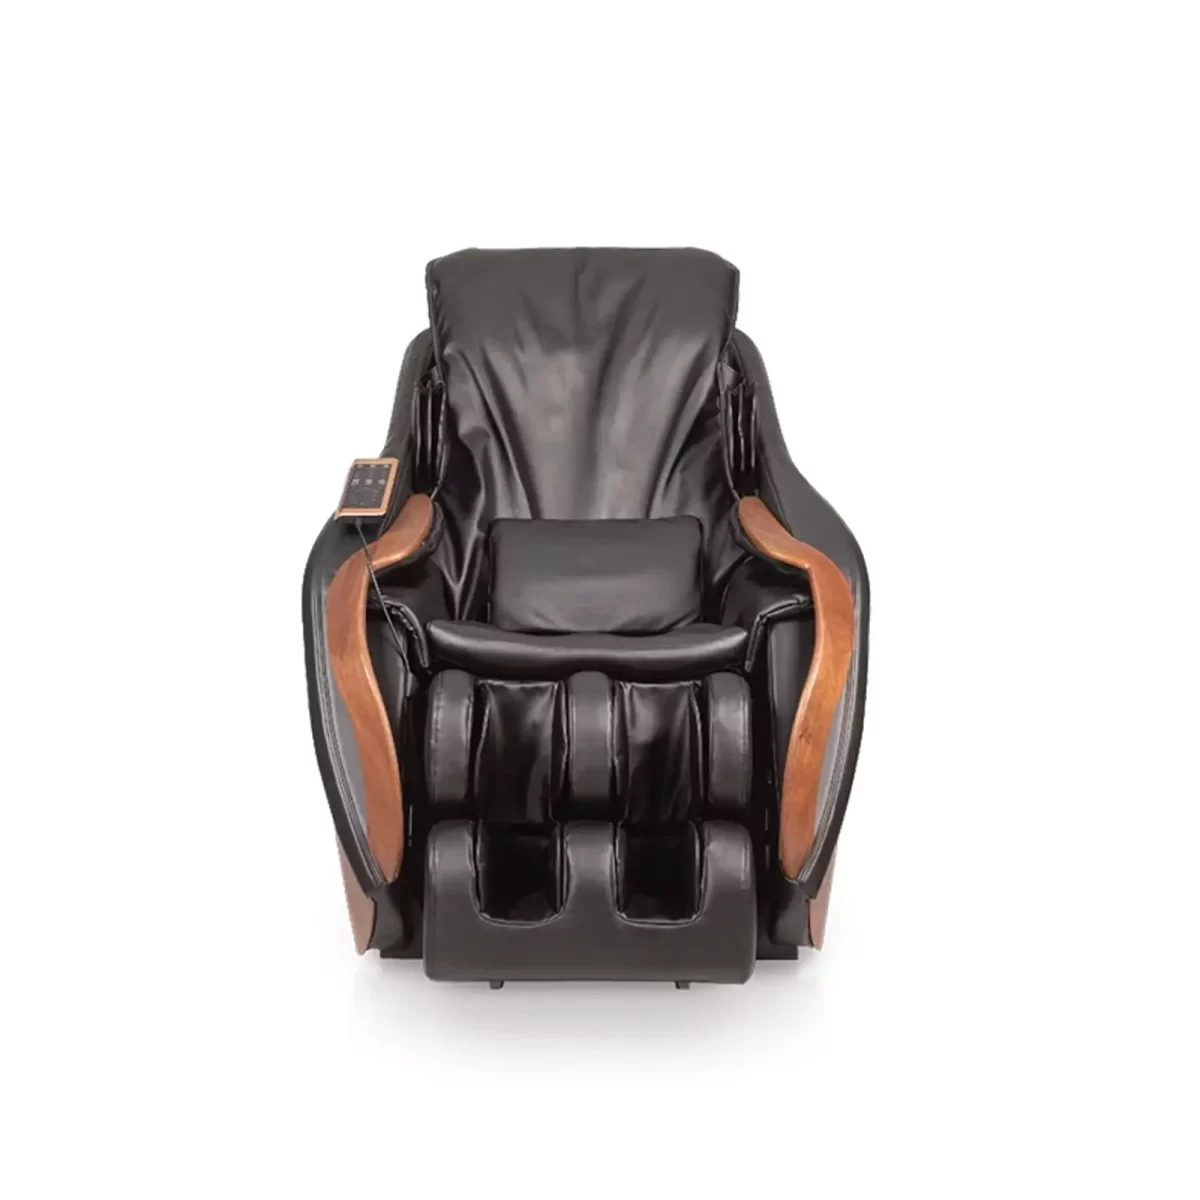 dcore cirrus massage chair black 4 6533e9954f89f